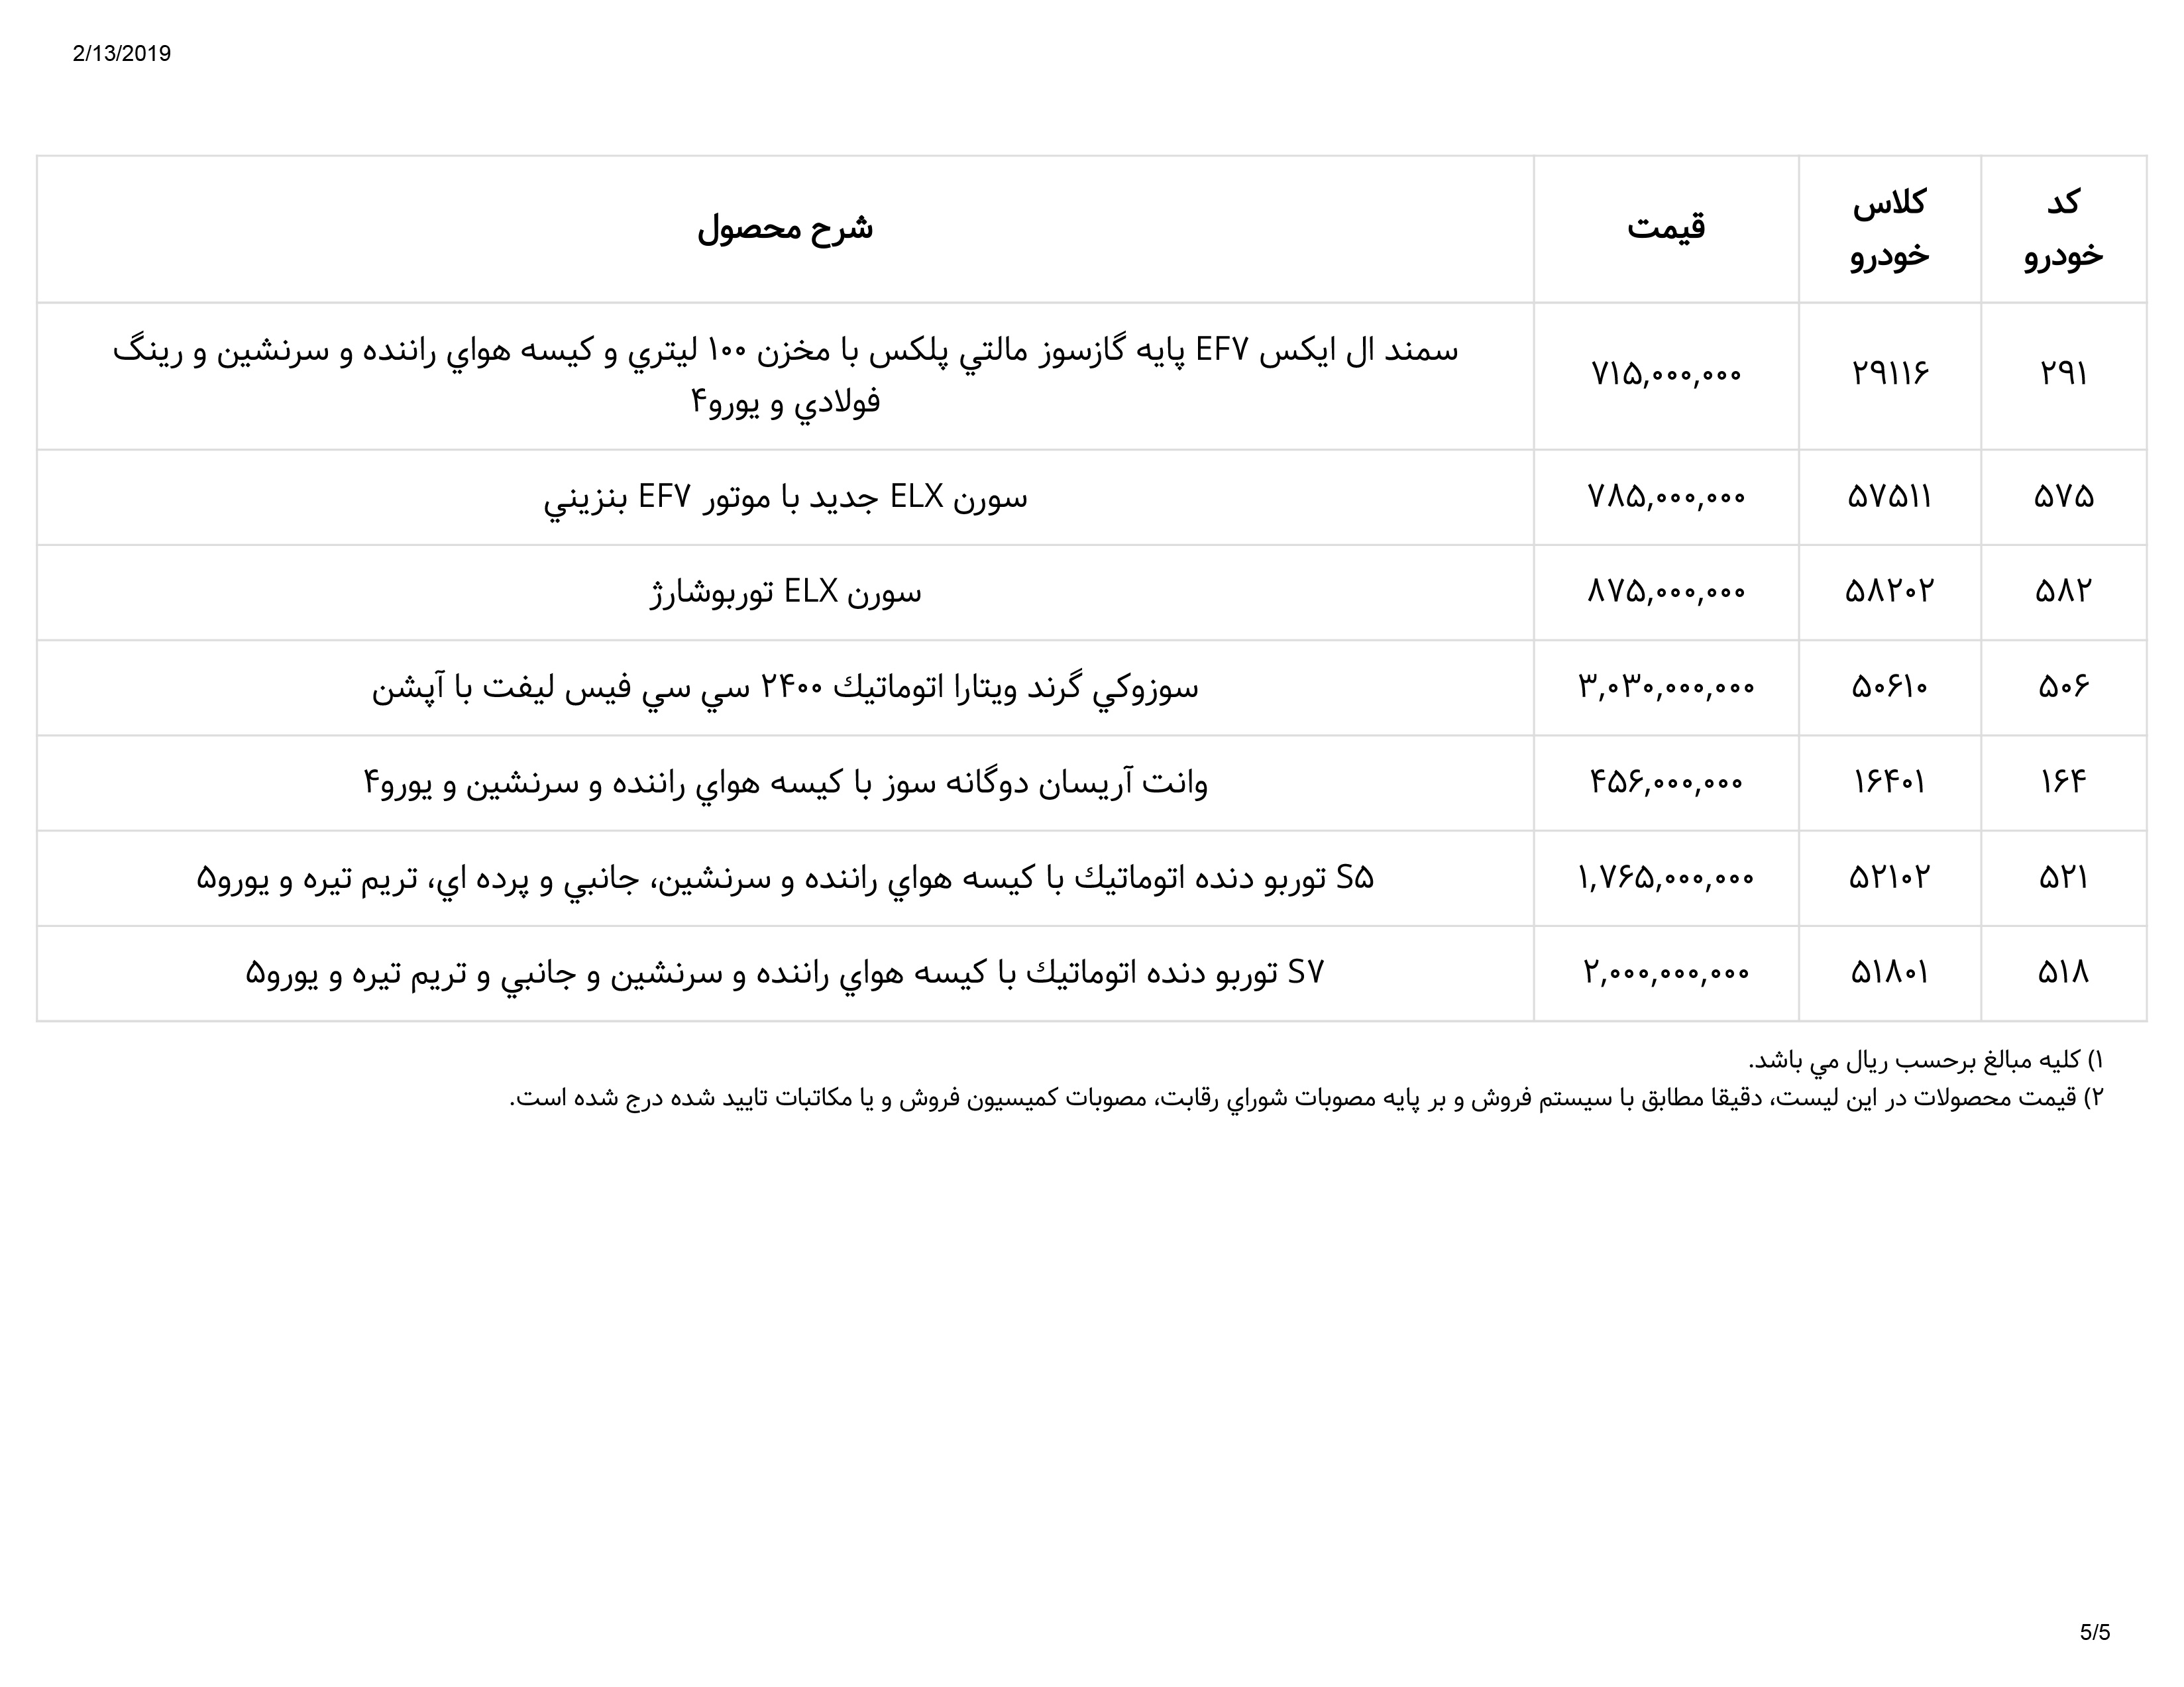 ایران خودرو لیست قیمت 5 - لیست قیمت محصولات ایران خودرو ۲۵ بهمن ۱۳۹۷